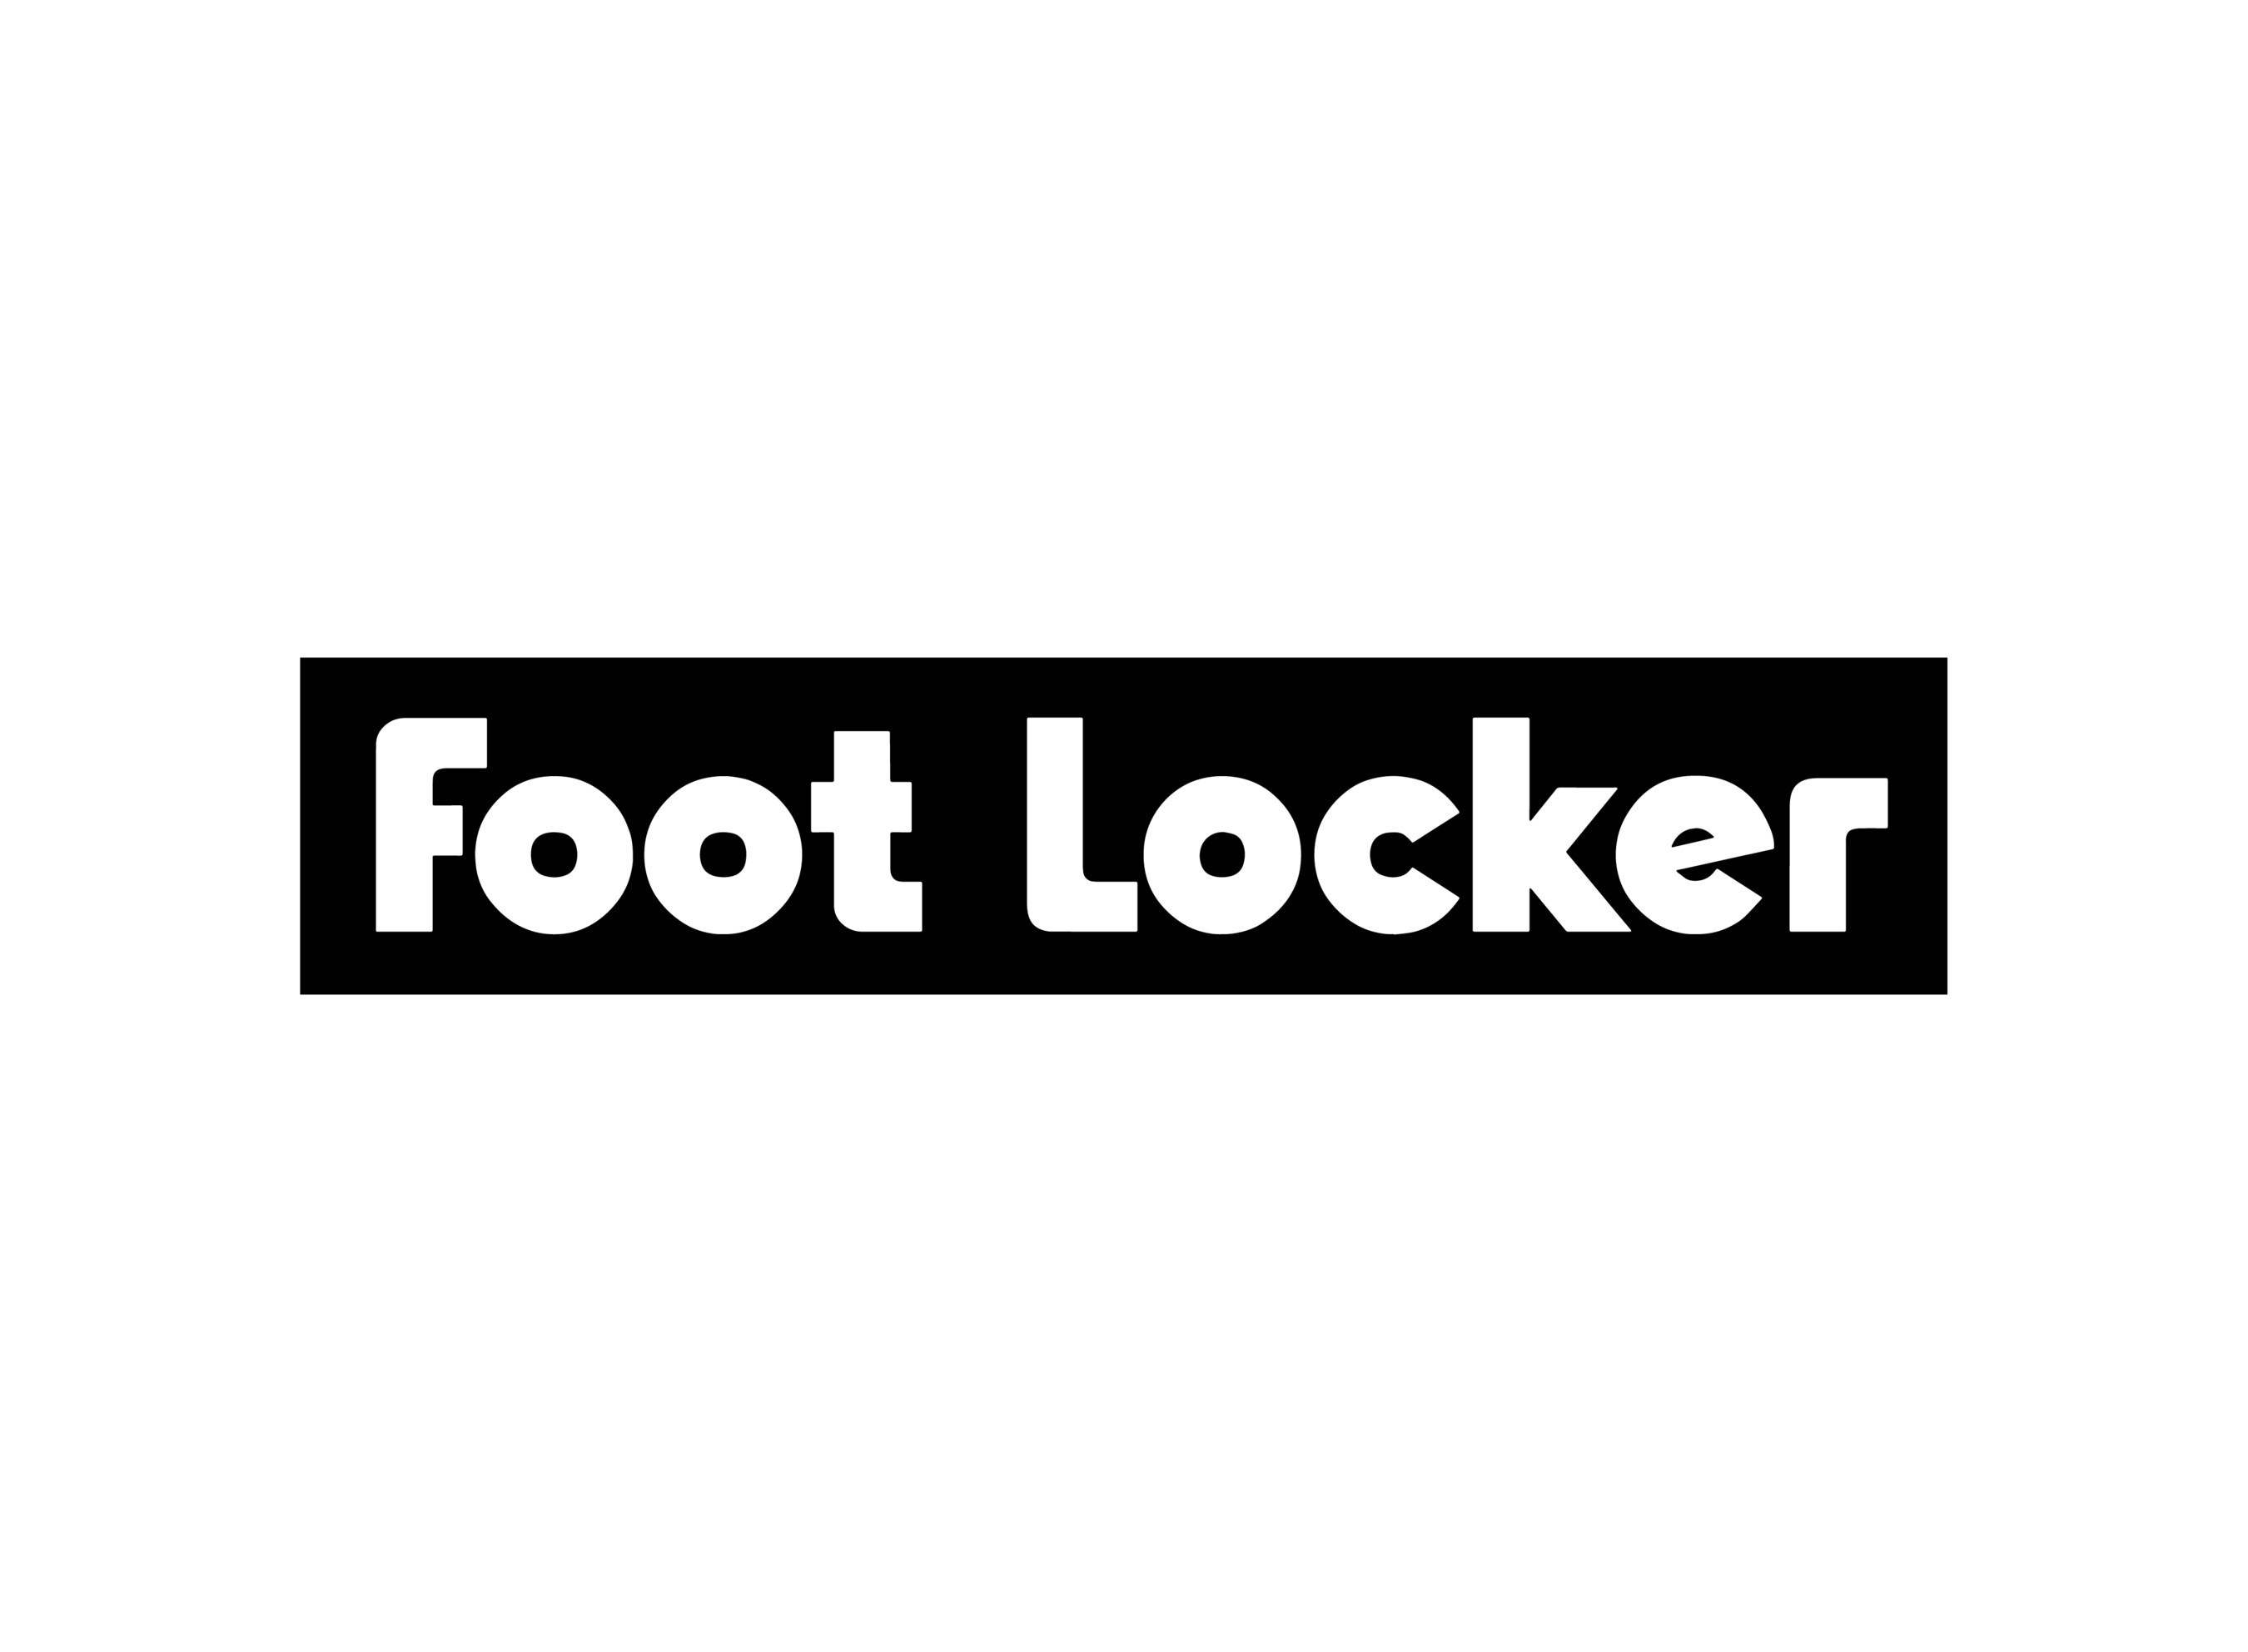 kendrick lamar reebok foot locker